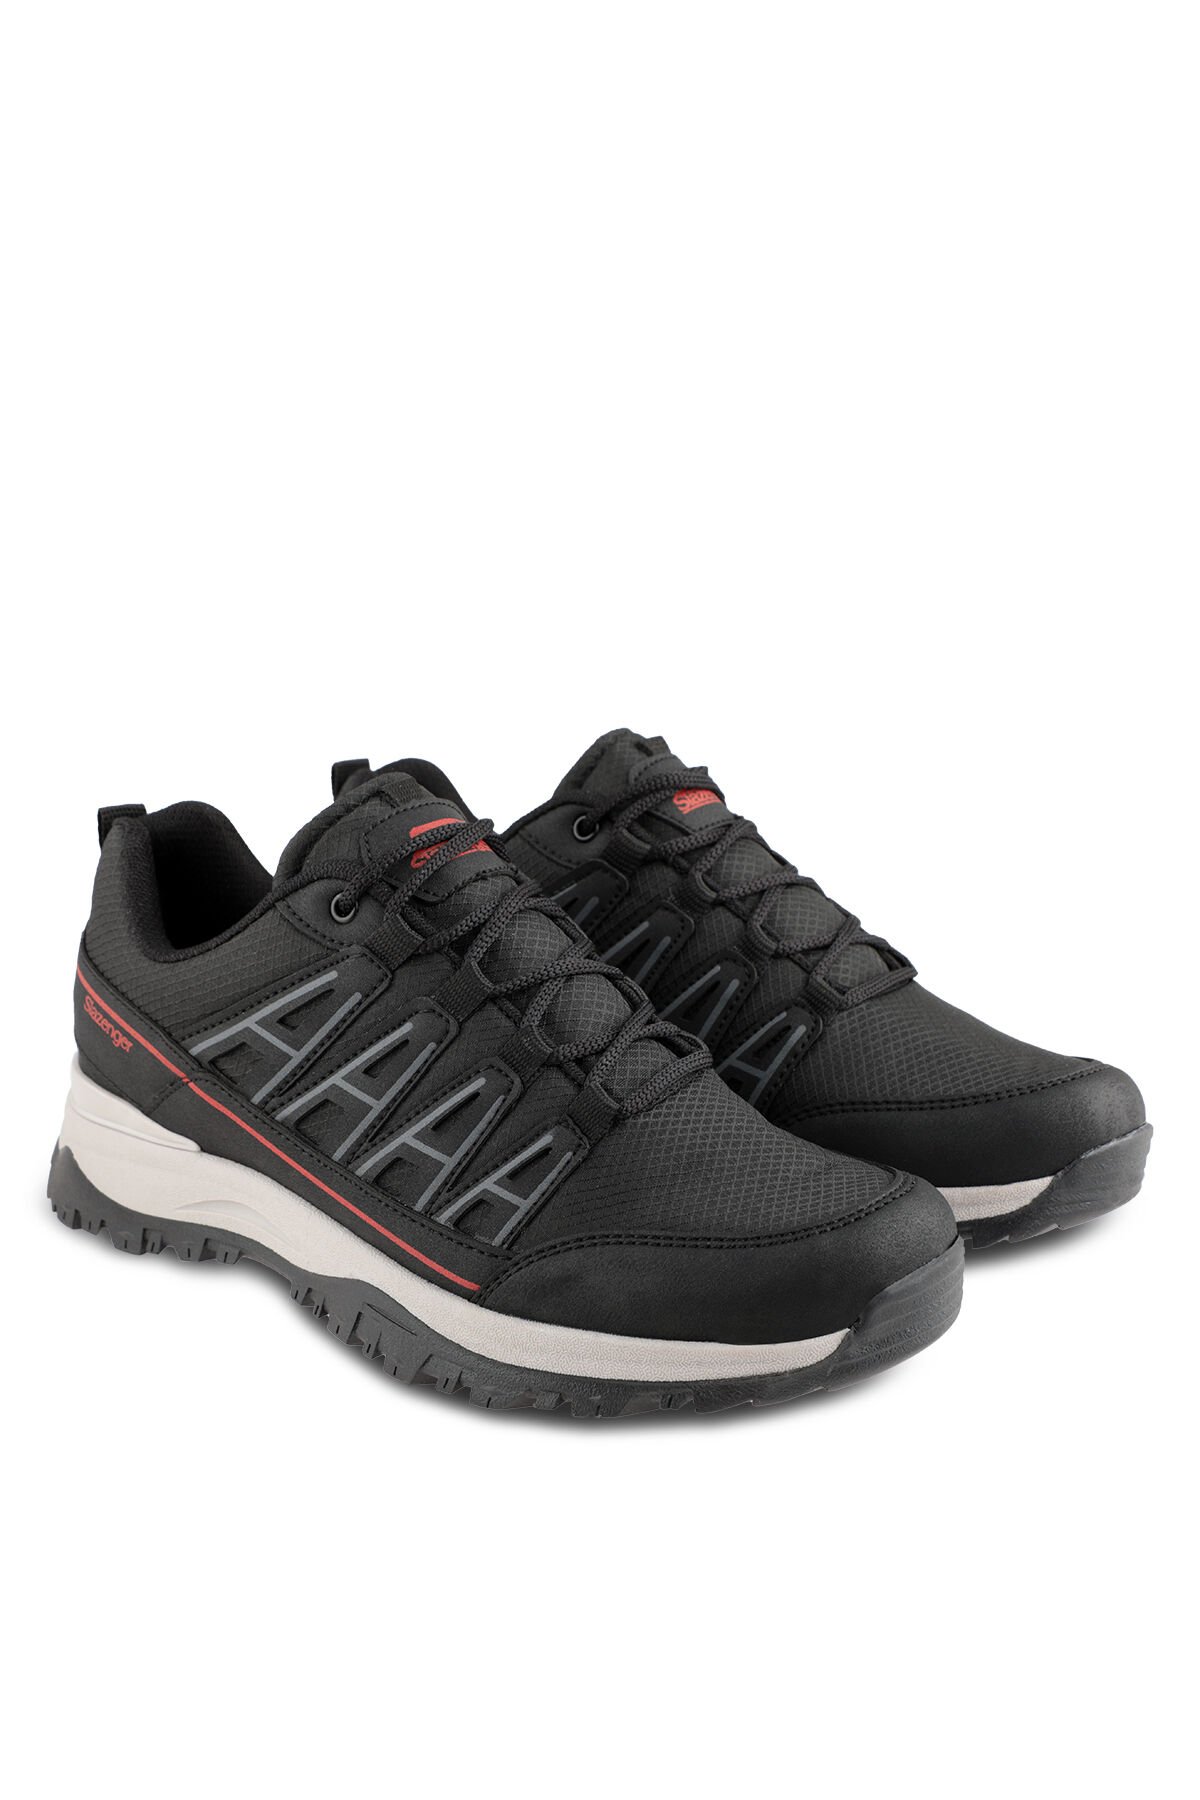 Slazenger KIERA I Sneaker Kadın Ayakkabı Siyah / Kırmızı - Thumbnail